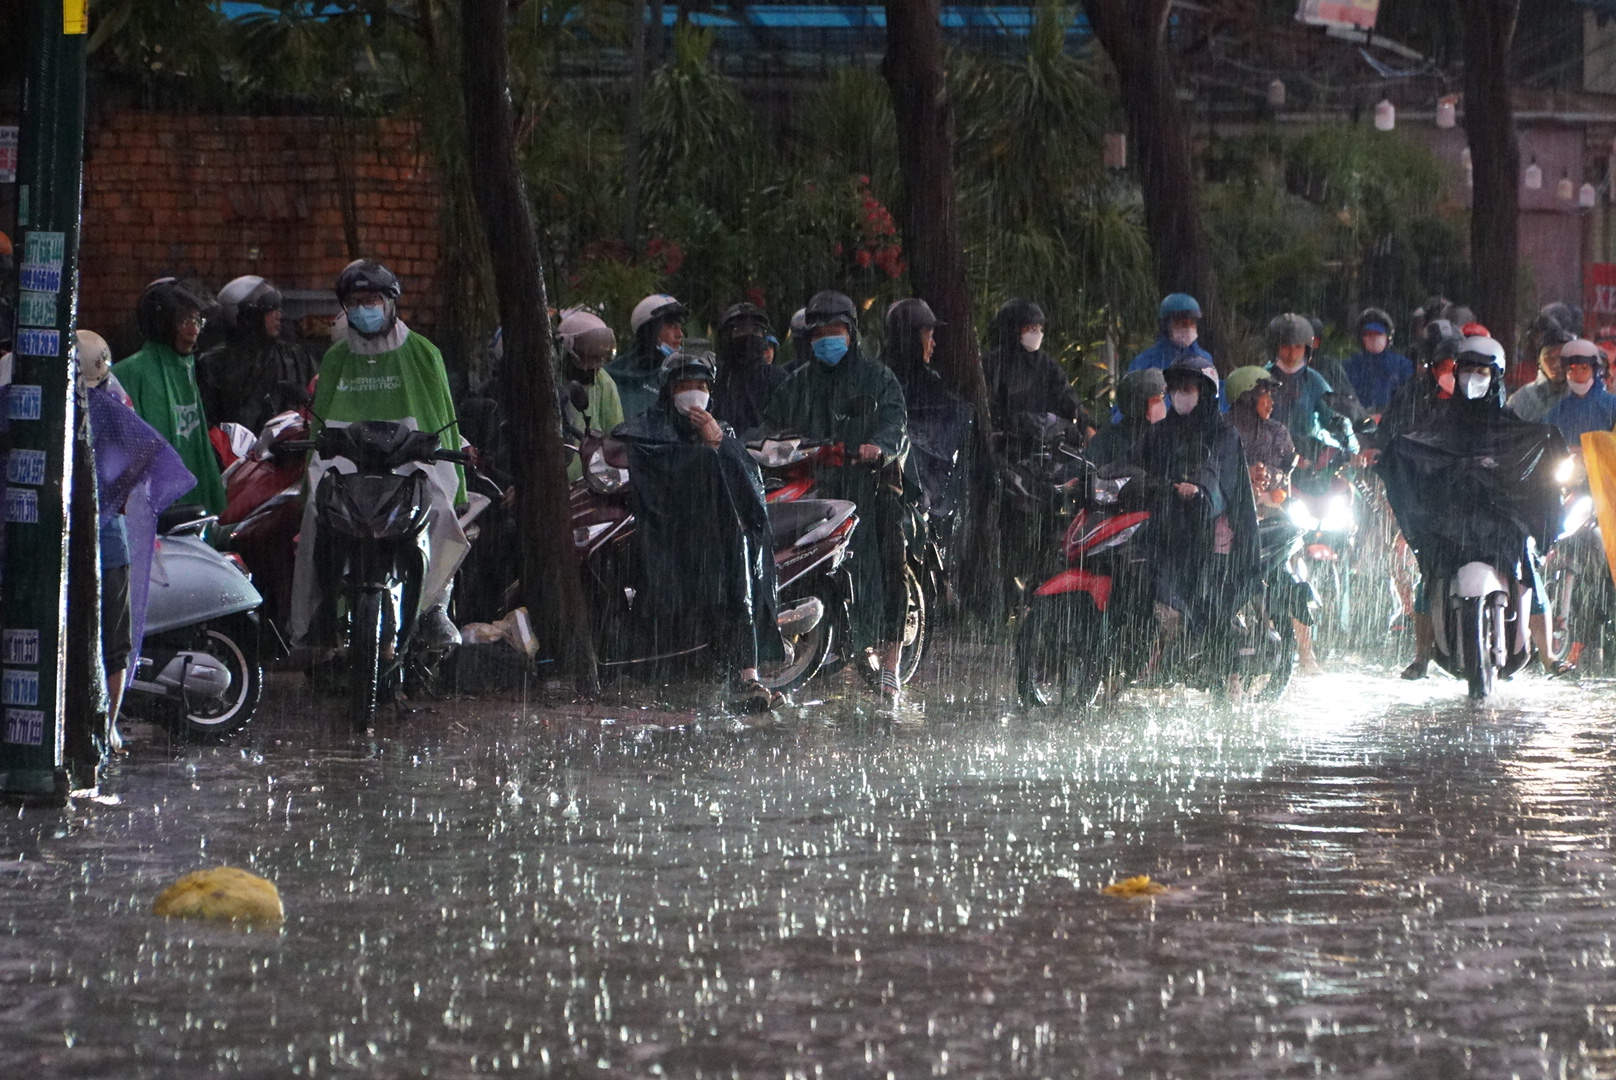 Còn tại khu vực đường Phạm Văn Đồng (TP.Thủ Đức) tình trnag5 kẹt xe nghiêm trọng xảy ra vì nước ngập